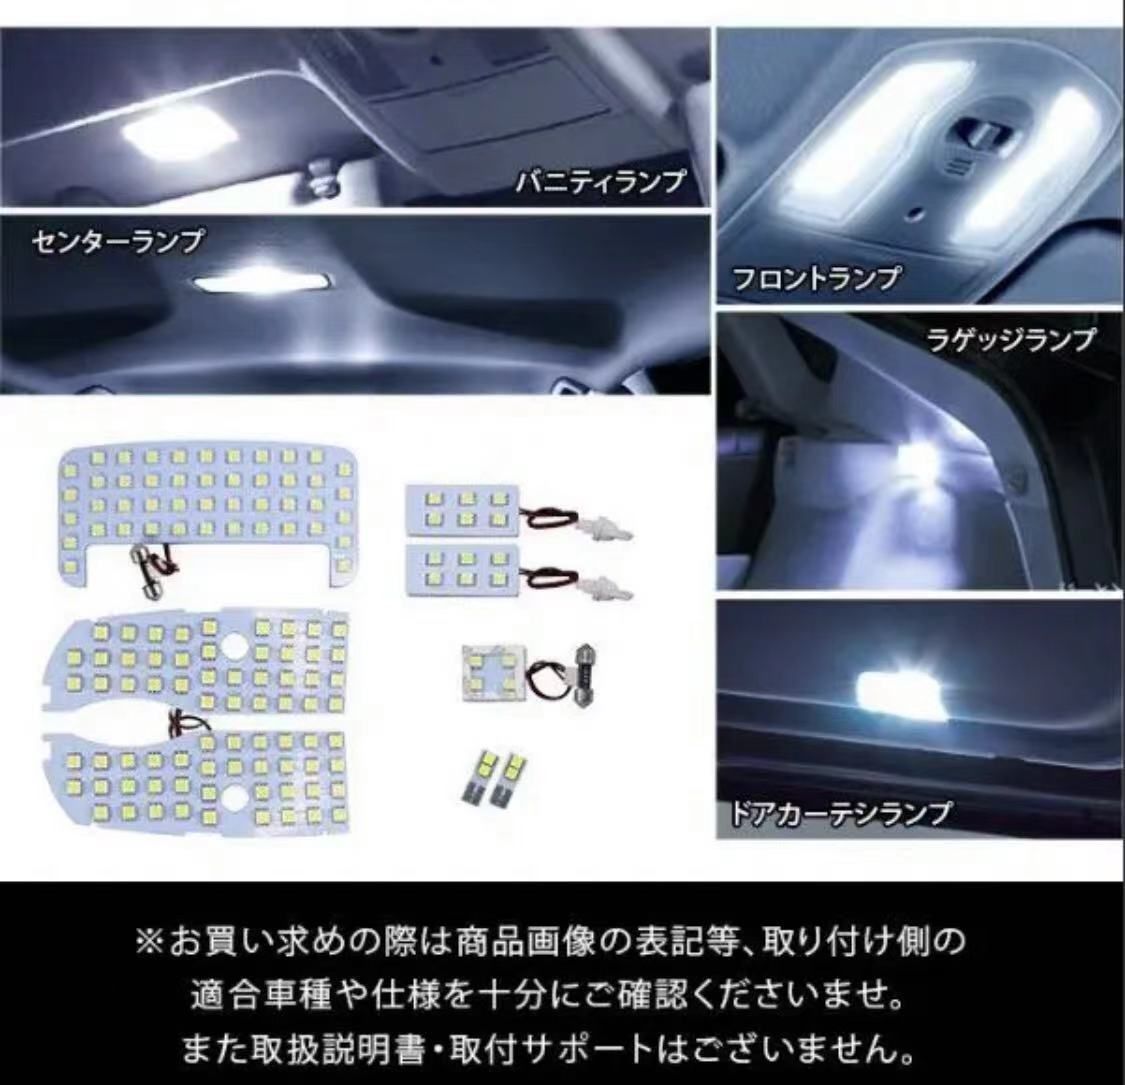 プリウス30系 α系 40系 LED ルームランプ 専用設計 車検対応 ホワイト - メルカリ